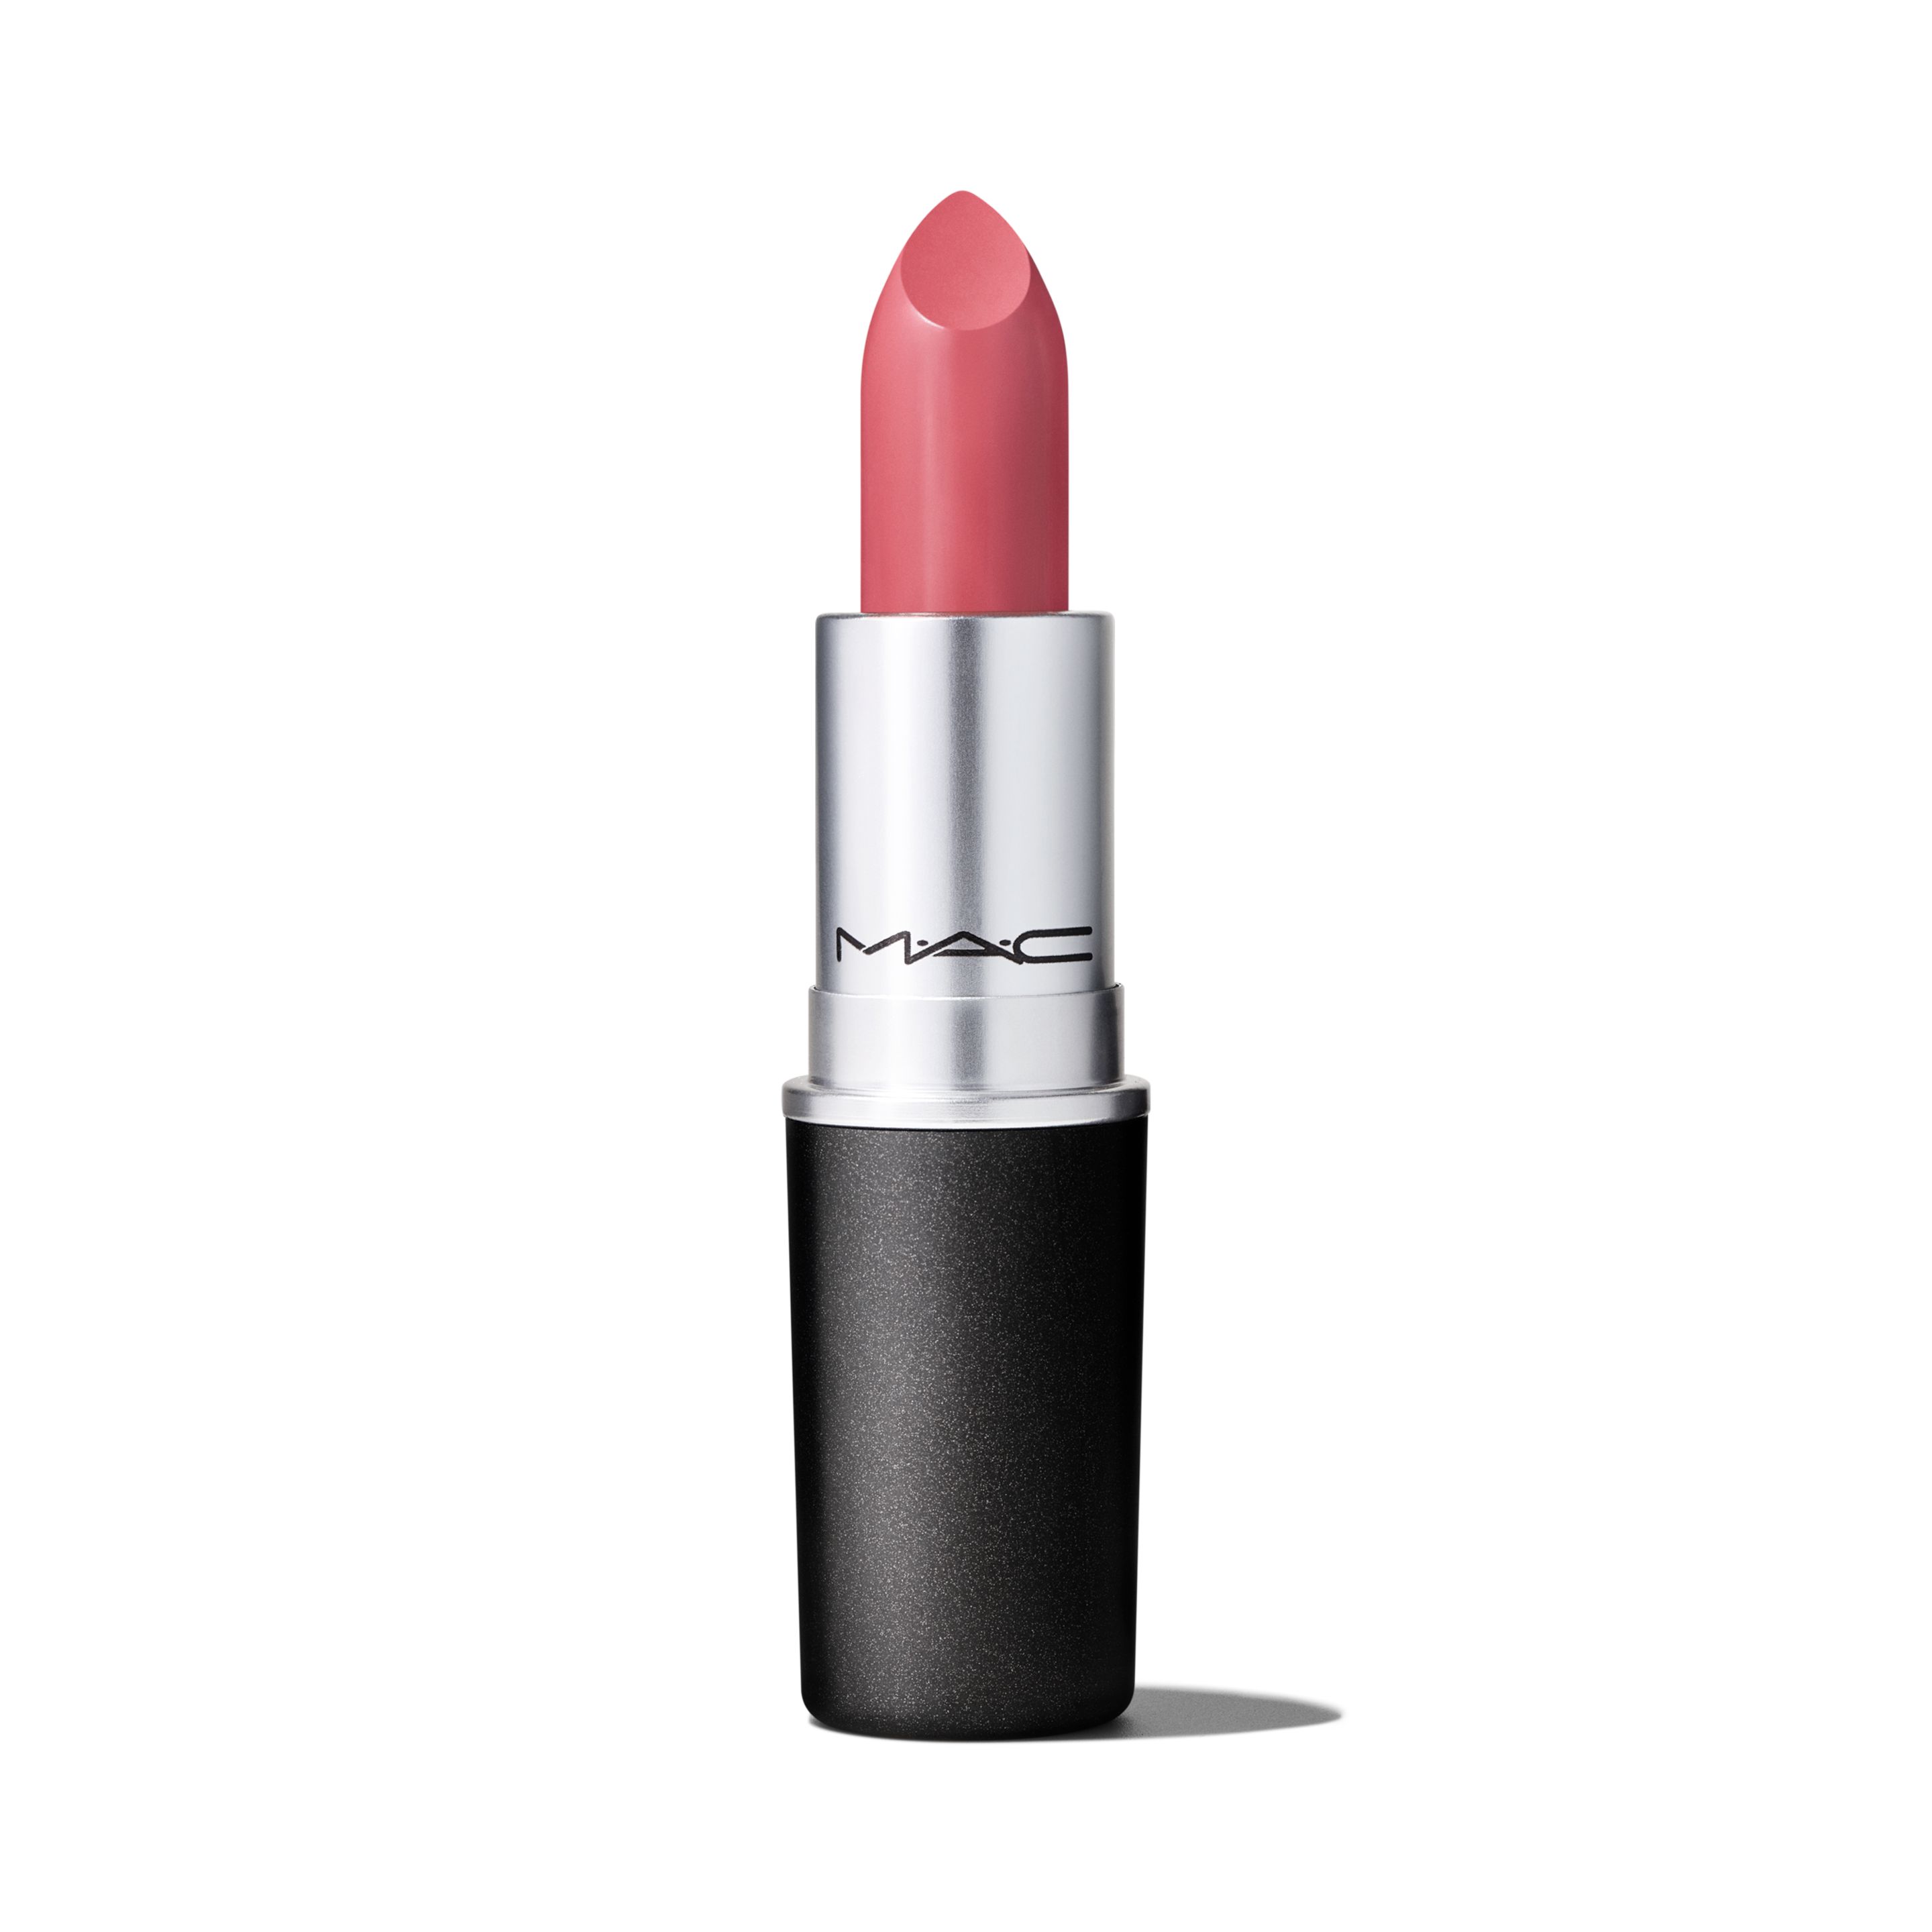 Помада для губ MAC Cosmetics Satin Lipstick кремовая, тон Brave, 3 г помада для губ mac cosmetics satin lipstick кремовая тон myth 3 г